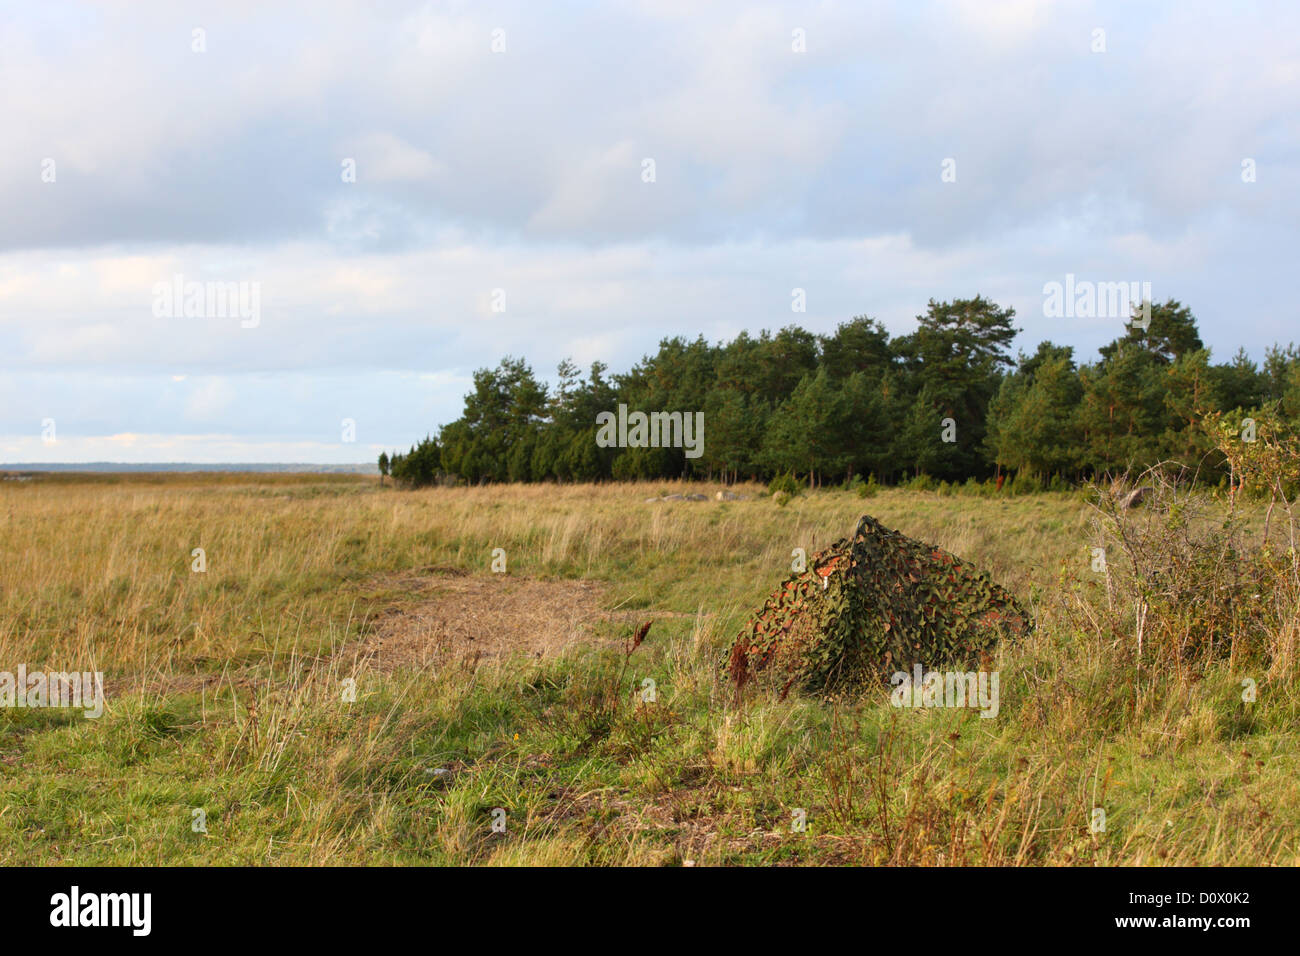 Nascondi fotografico coperto con camouflage net, pronto per la caccia agli uccelli e mammiferi. L'Europa, Estonia Foto Stock